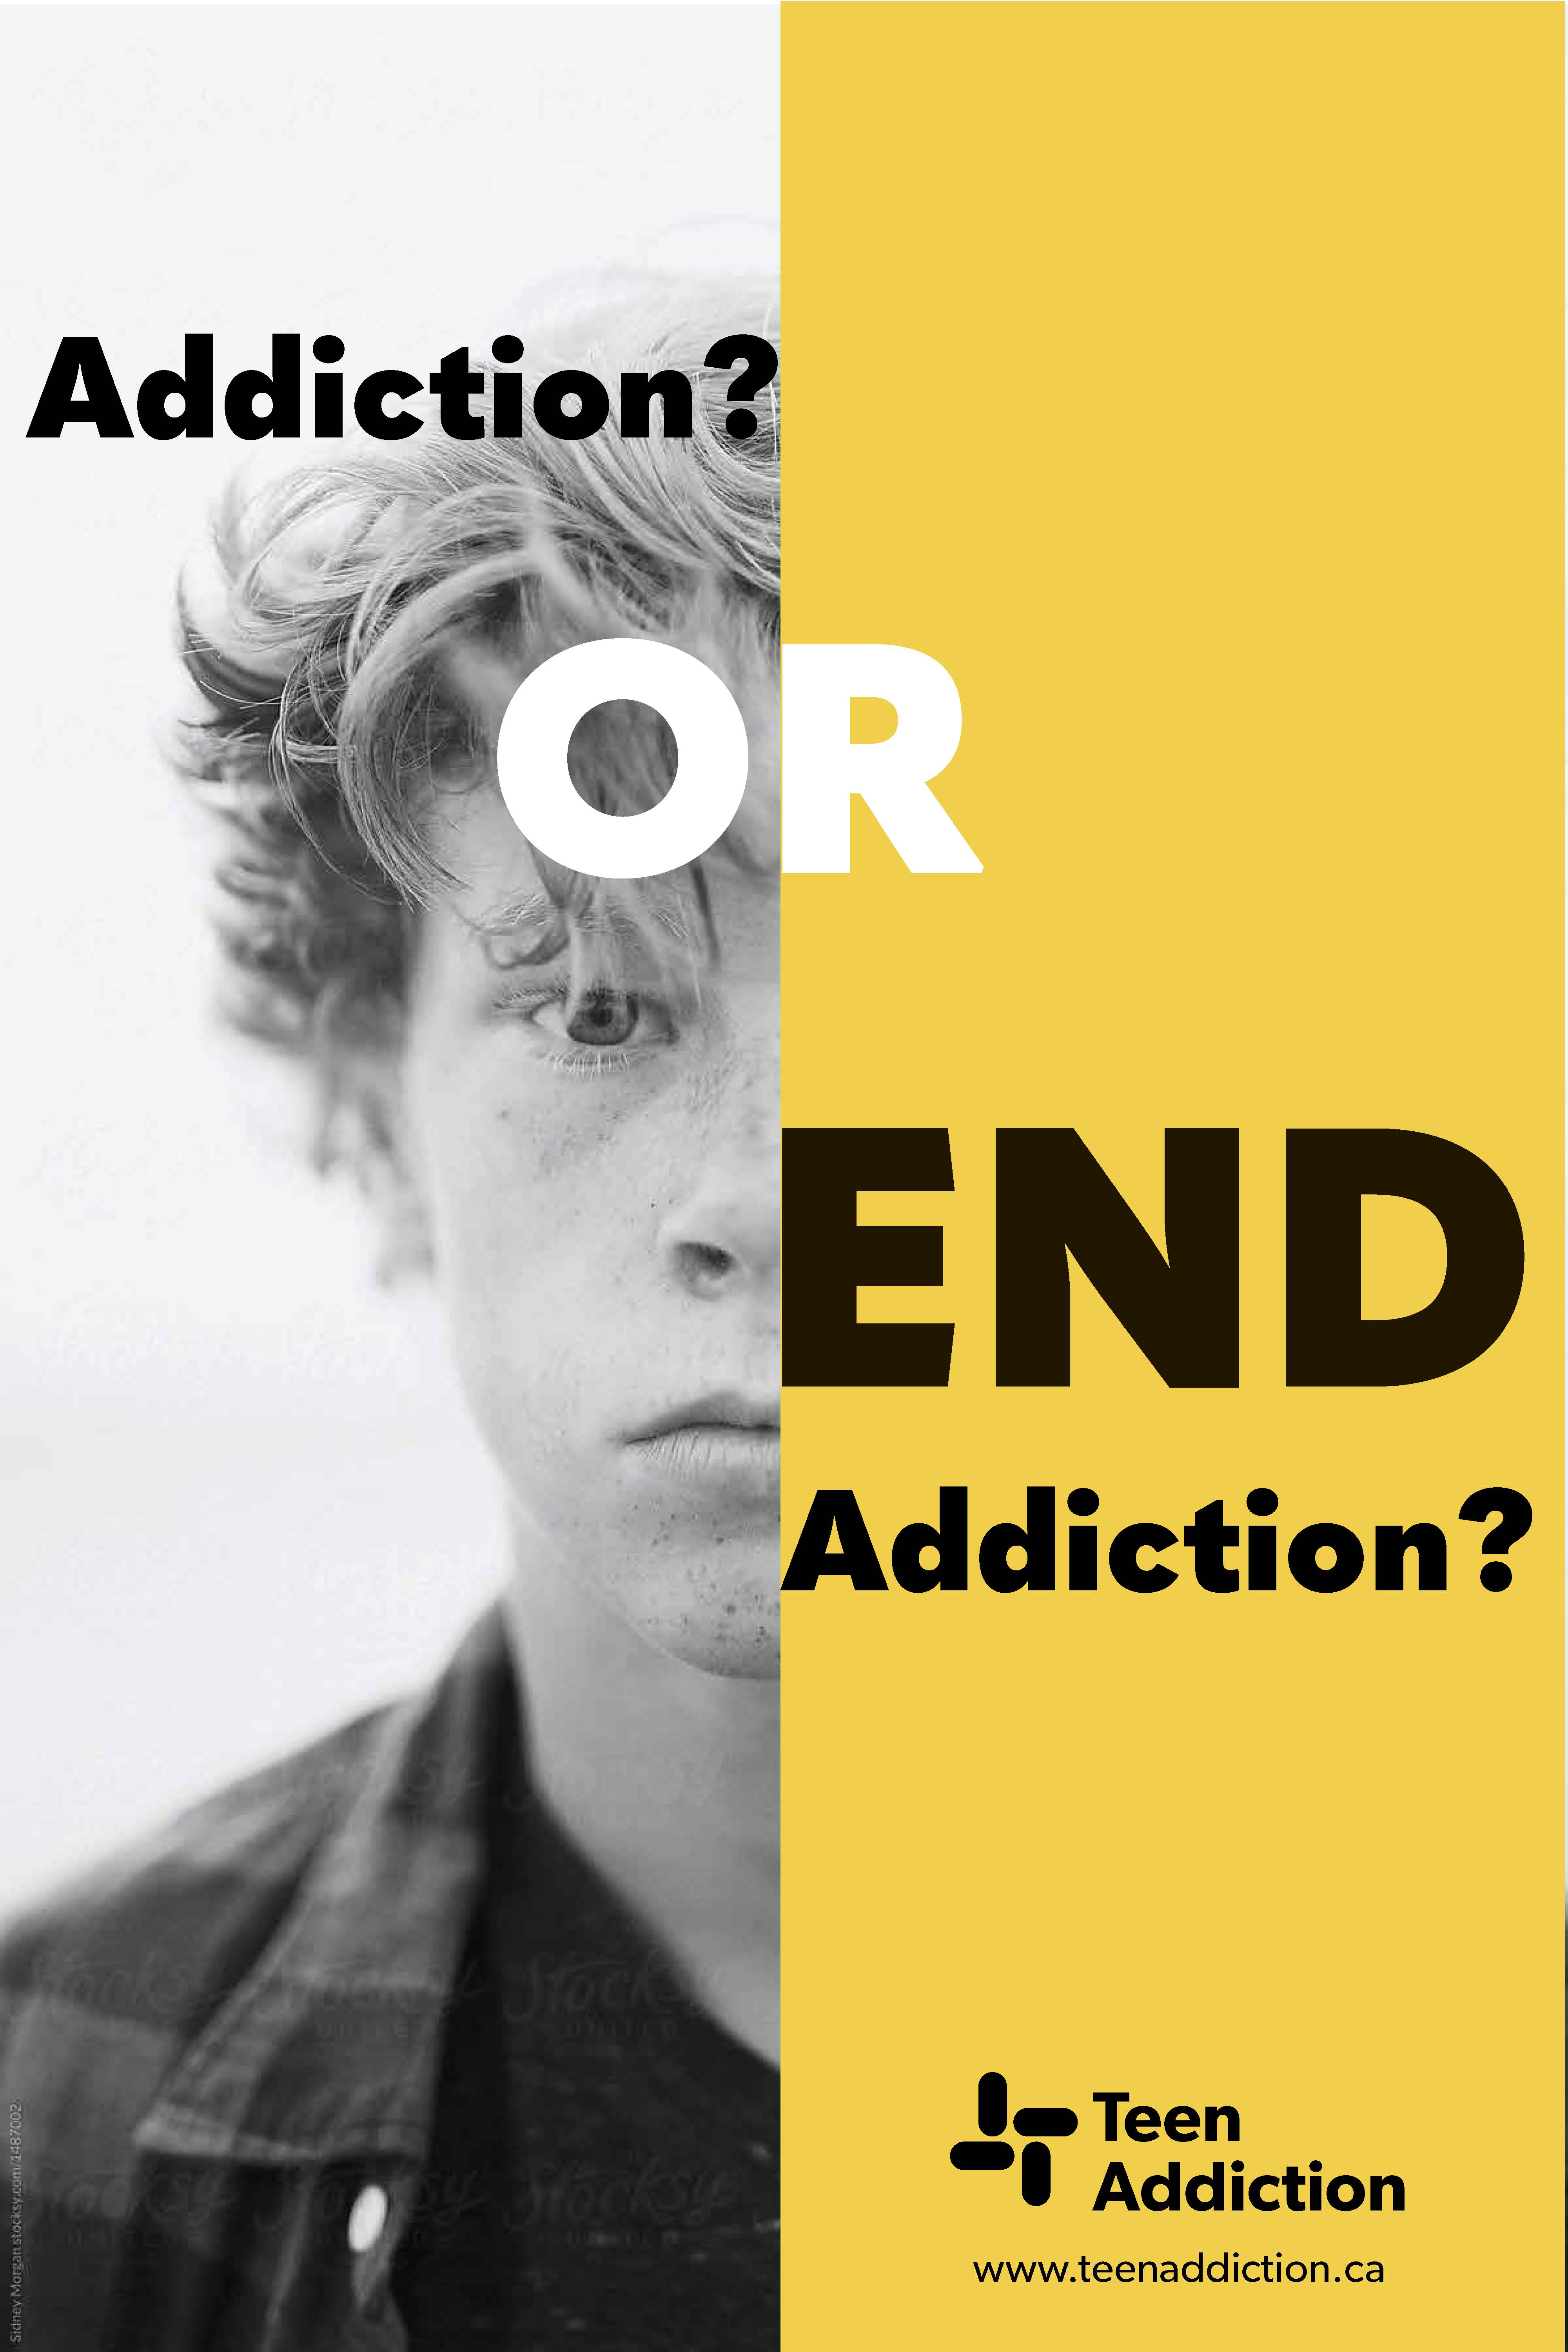 Teen Addiction Billboards